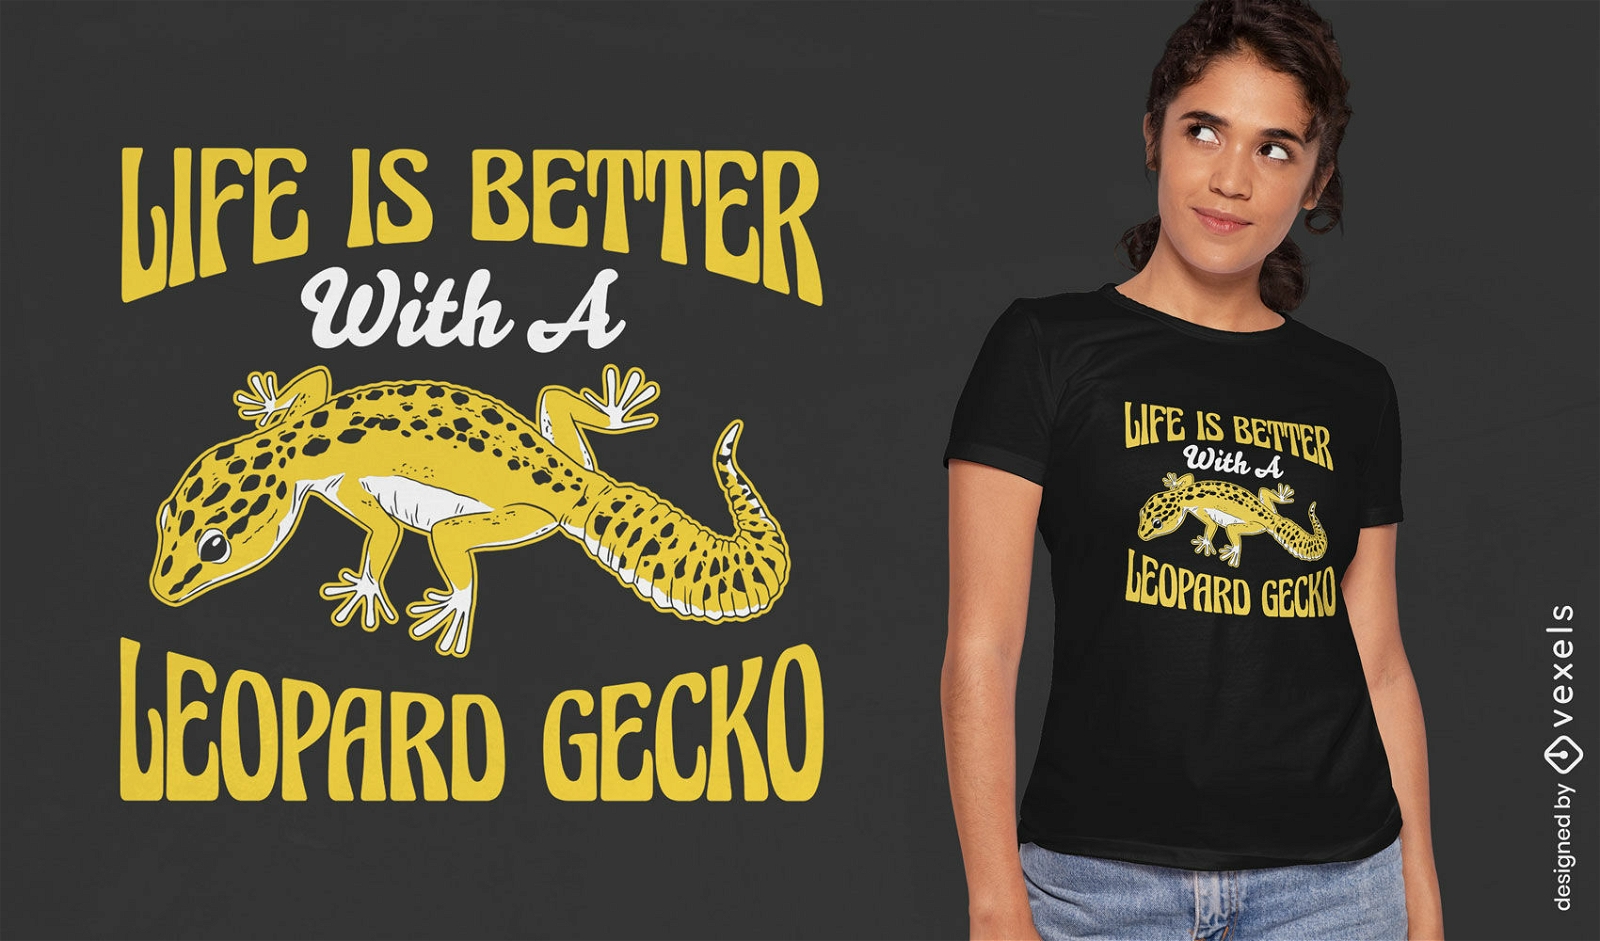 Dise?o de camiseta con cita de gecko leopardo